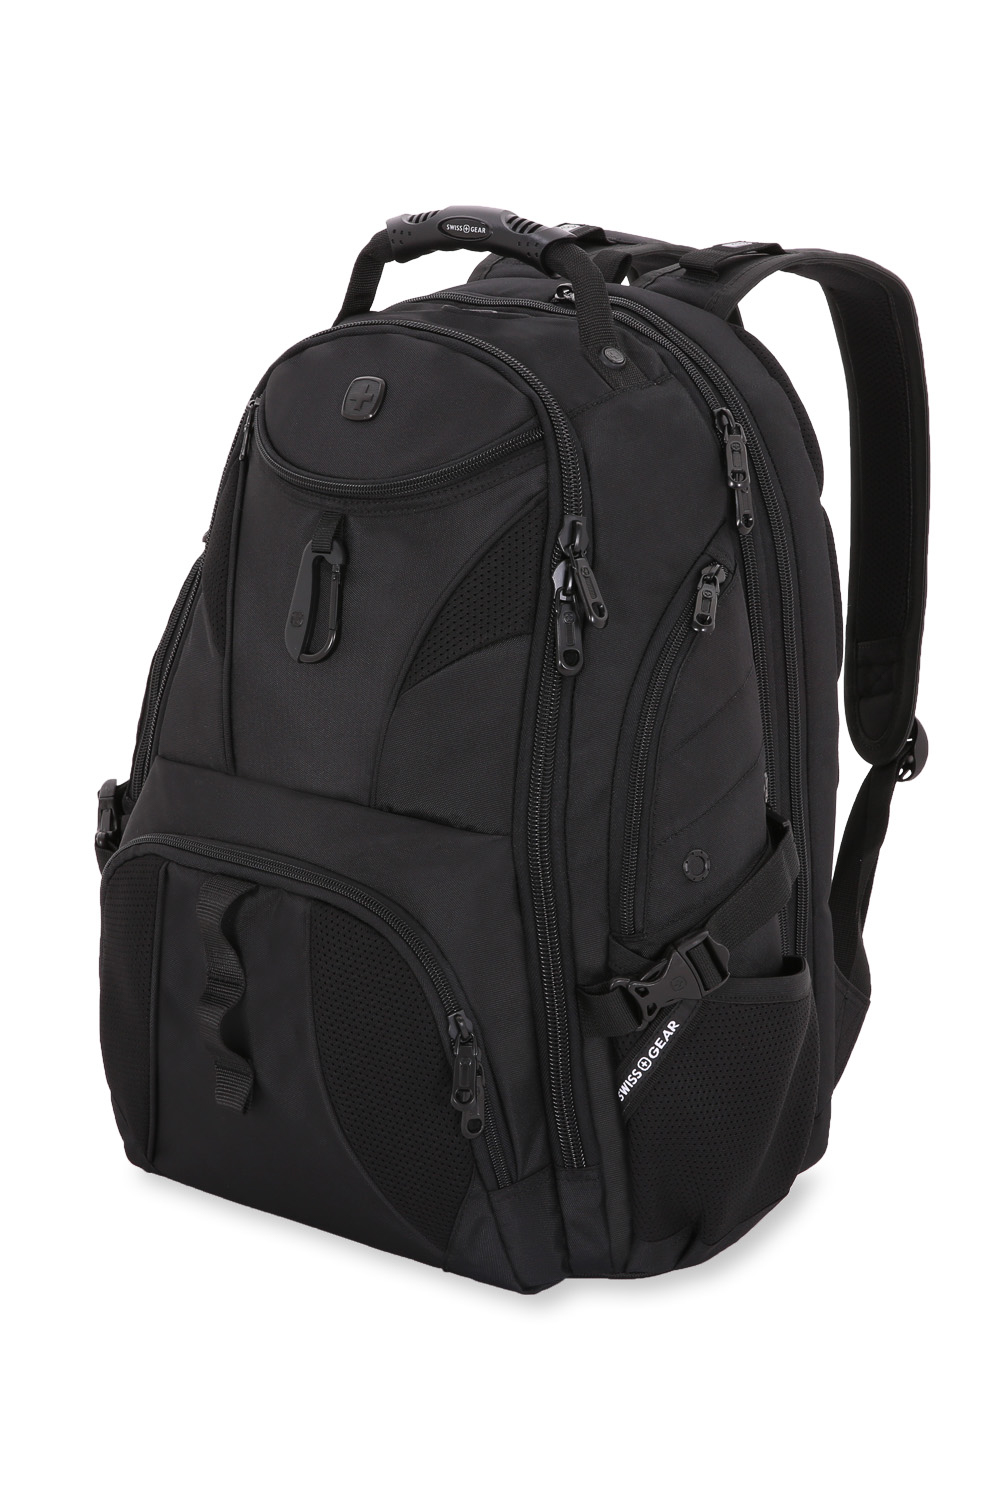 SwissGear TSA Approved 15 Inch Laptop Backpack Travel Gear 1900 Black 